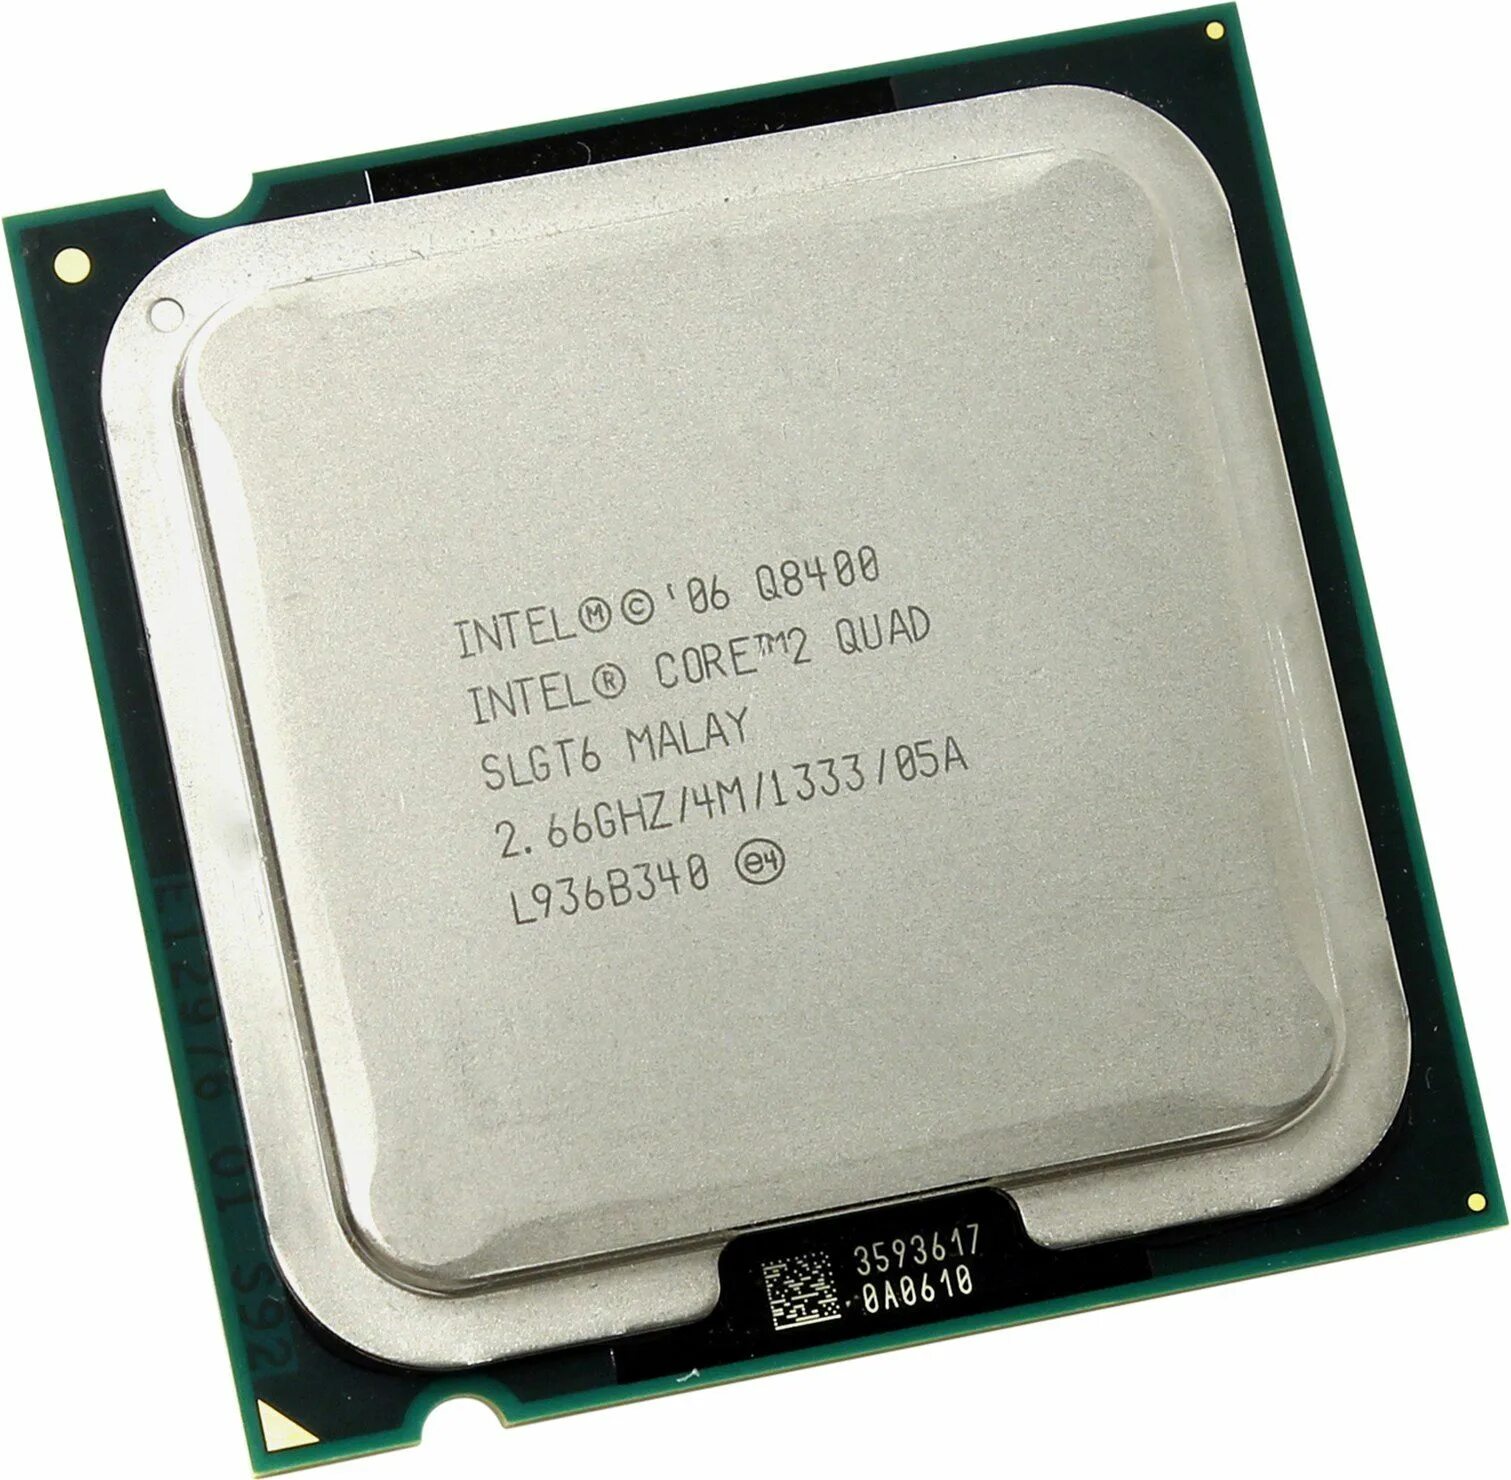 Интел коре пентиум. Процессор Dual Core e2140. Core 2 Quad q6600. Процессор: Intel Core 2 Quad CPU q6600. Intel Core 2 Duo e4500 lga775, 2 x 2200 МГЦ.